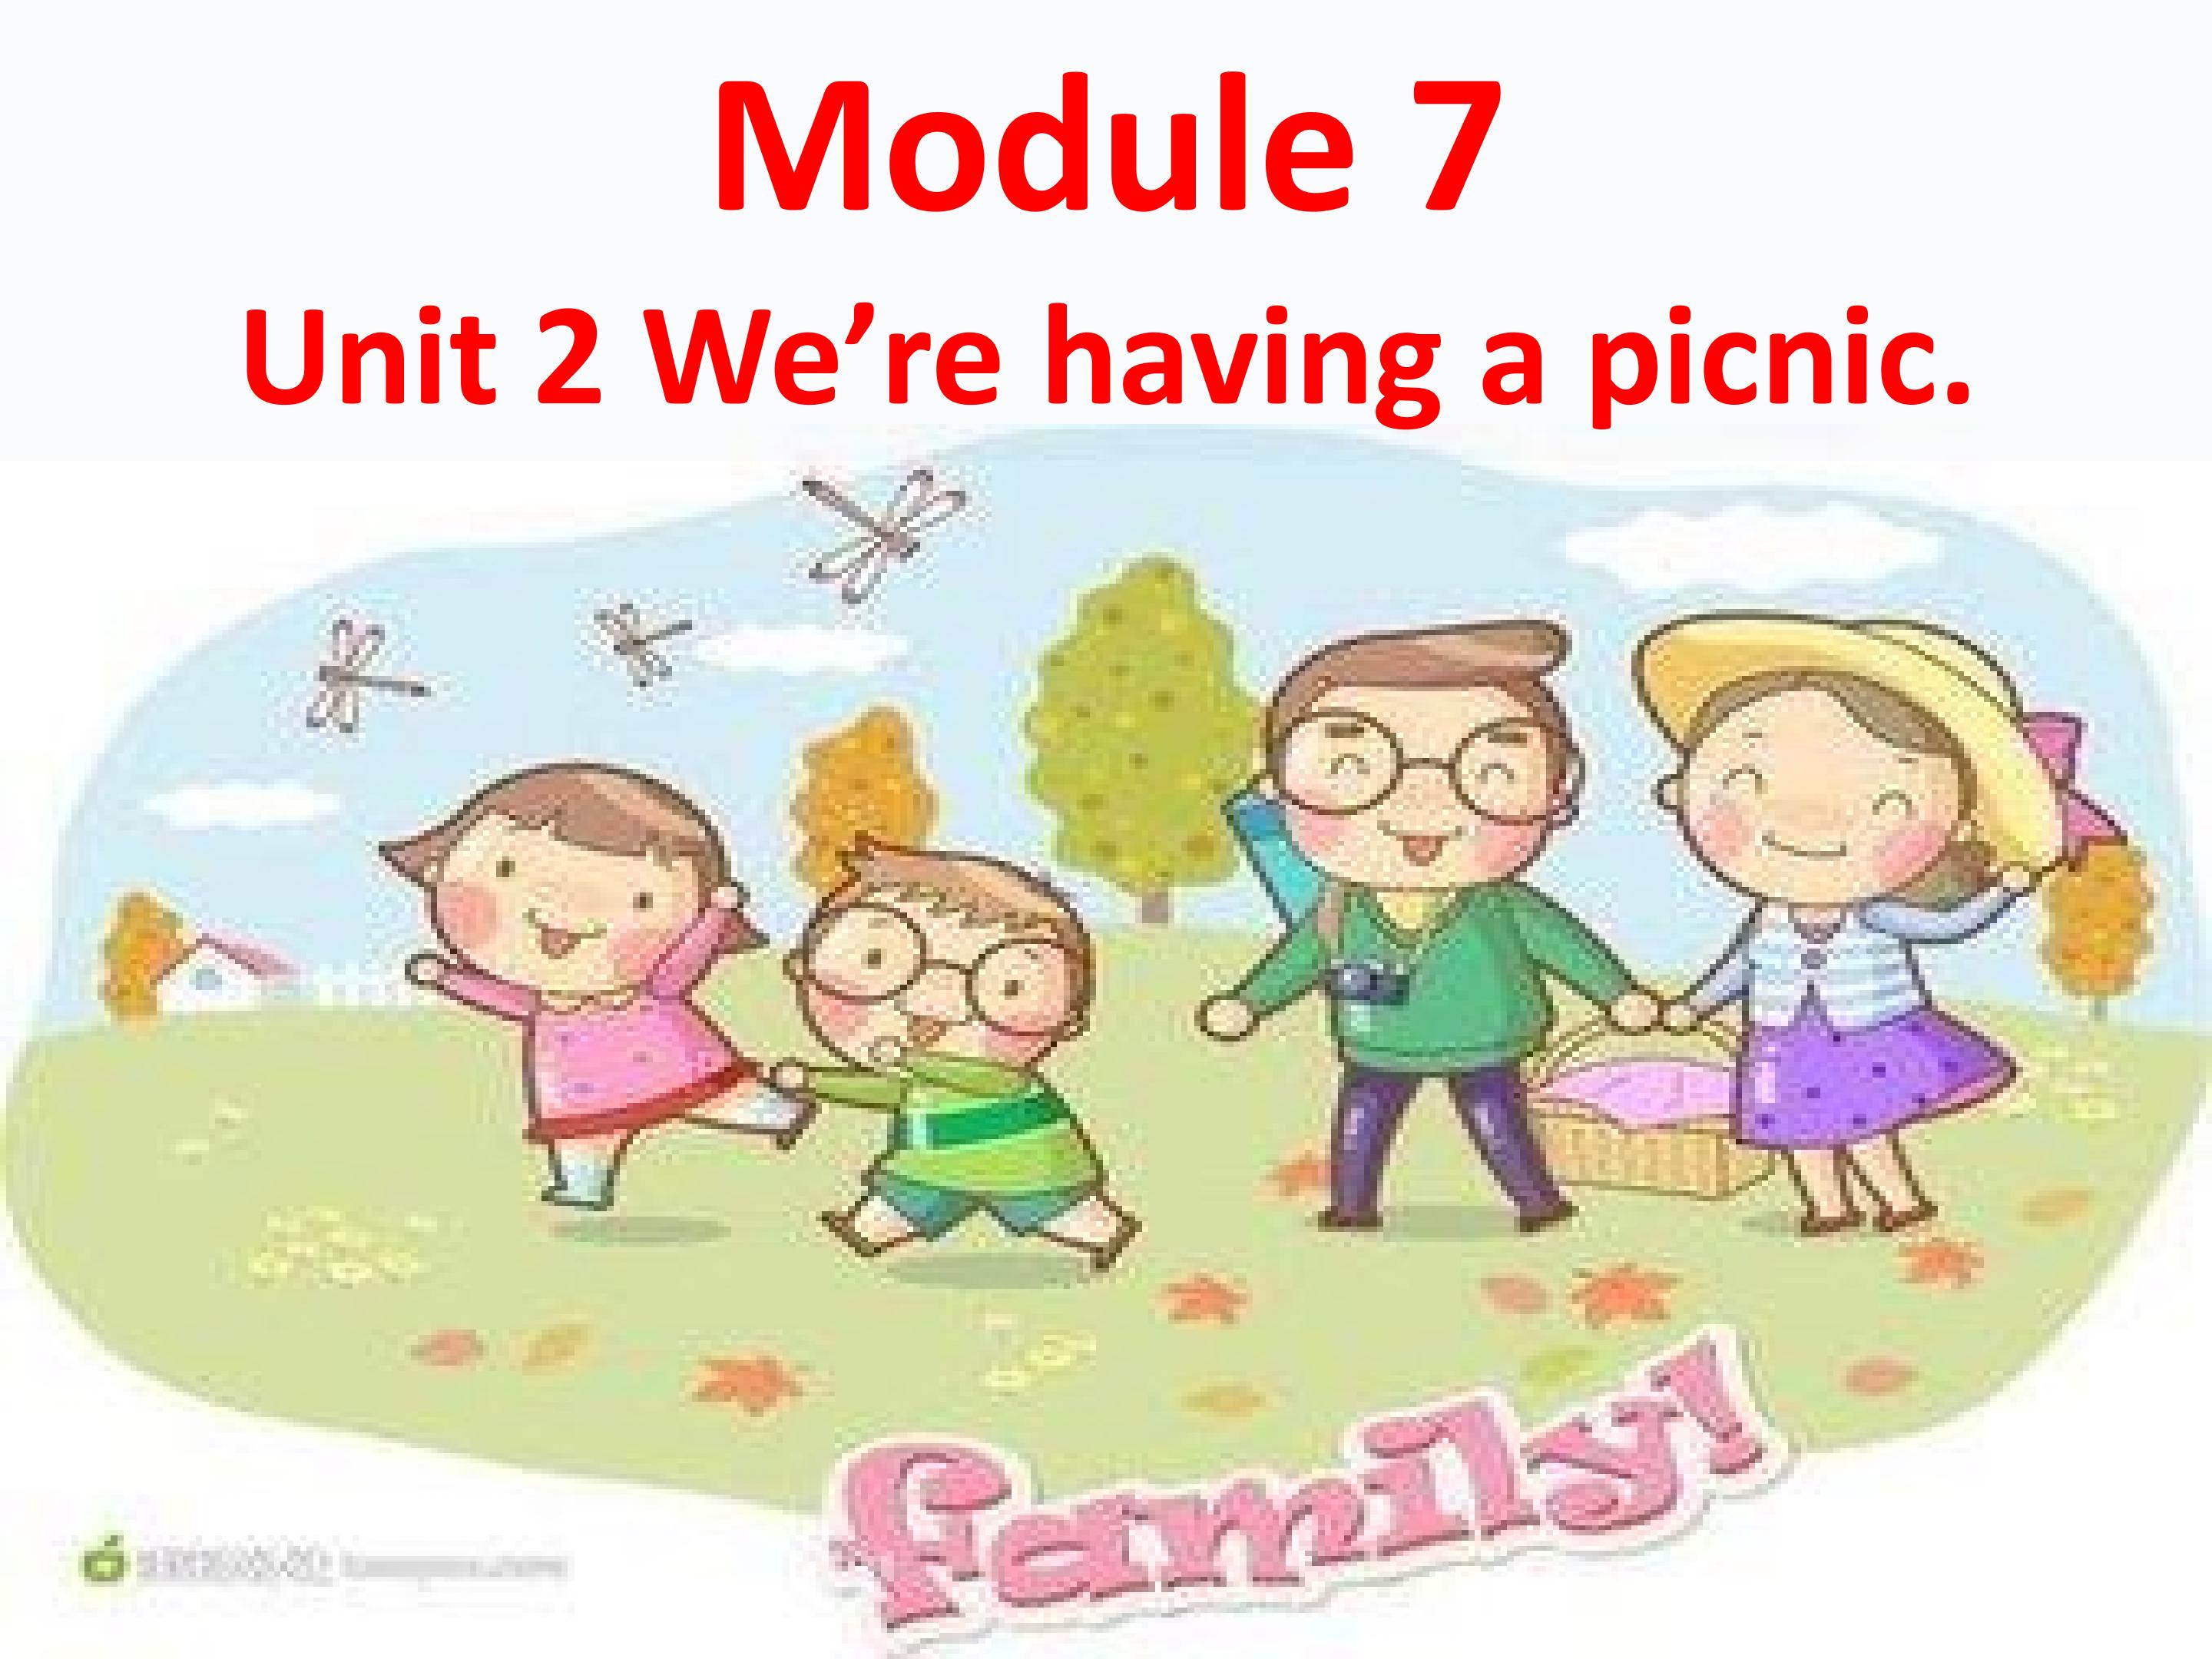 Unit 2 We're having a picnic.